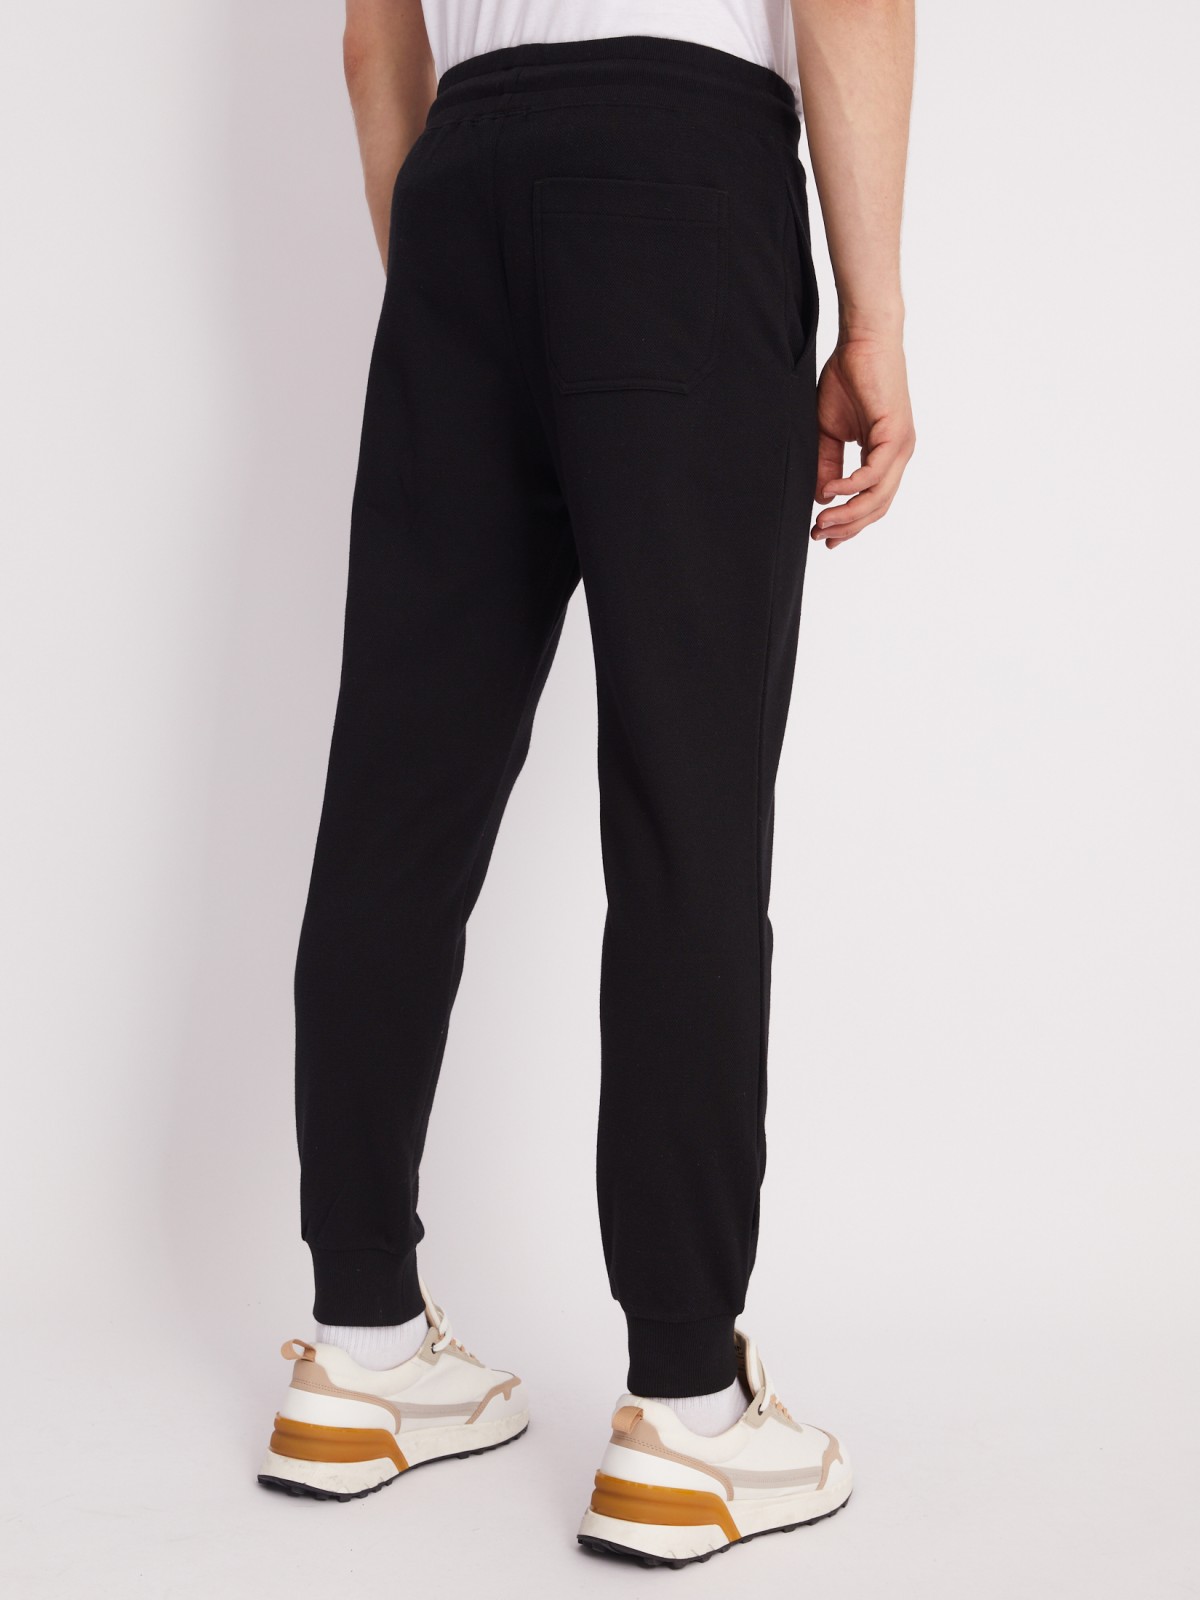 Трикотажные брюки-джоггеры в спортивном стиле zolla 21331762F012, цвет черный, размер M - фото 6